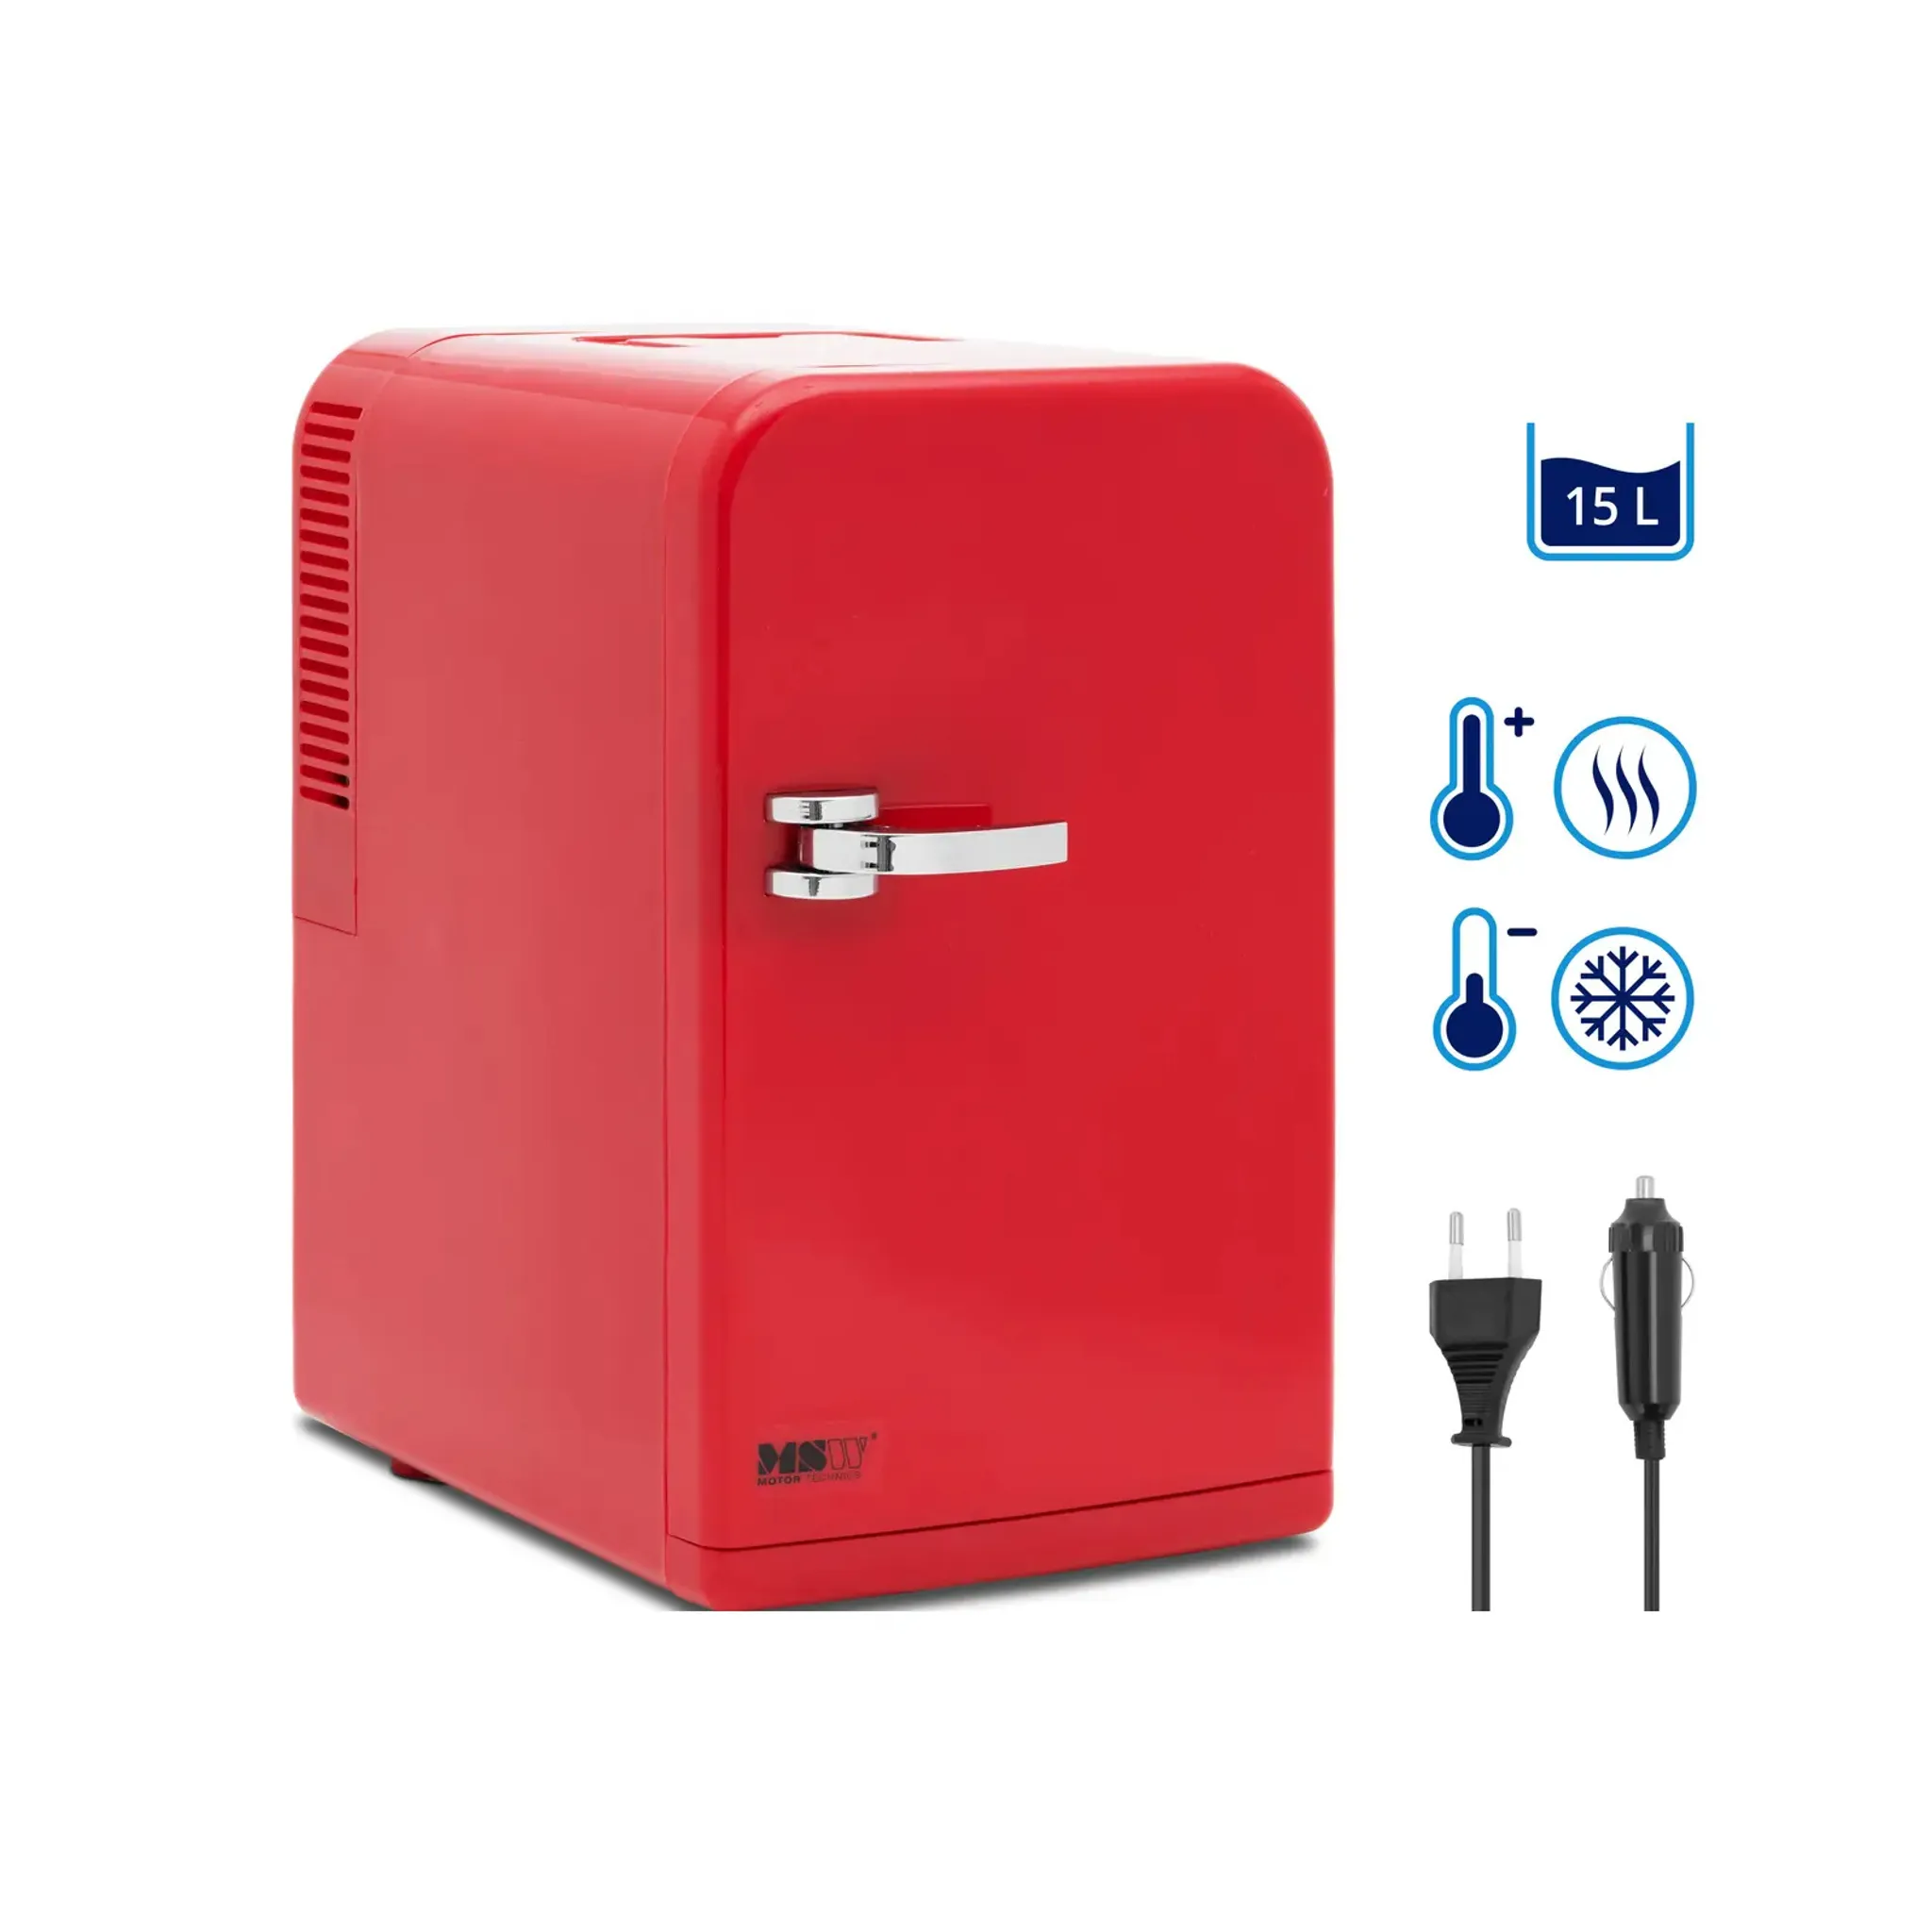 15 L Mini Kühlschrank 2 in 1 Kühl- und Heizfunktion Tragbarer Kühltruhe 27  x 33 x 38 cm Weiß + Schwarz - Costway